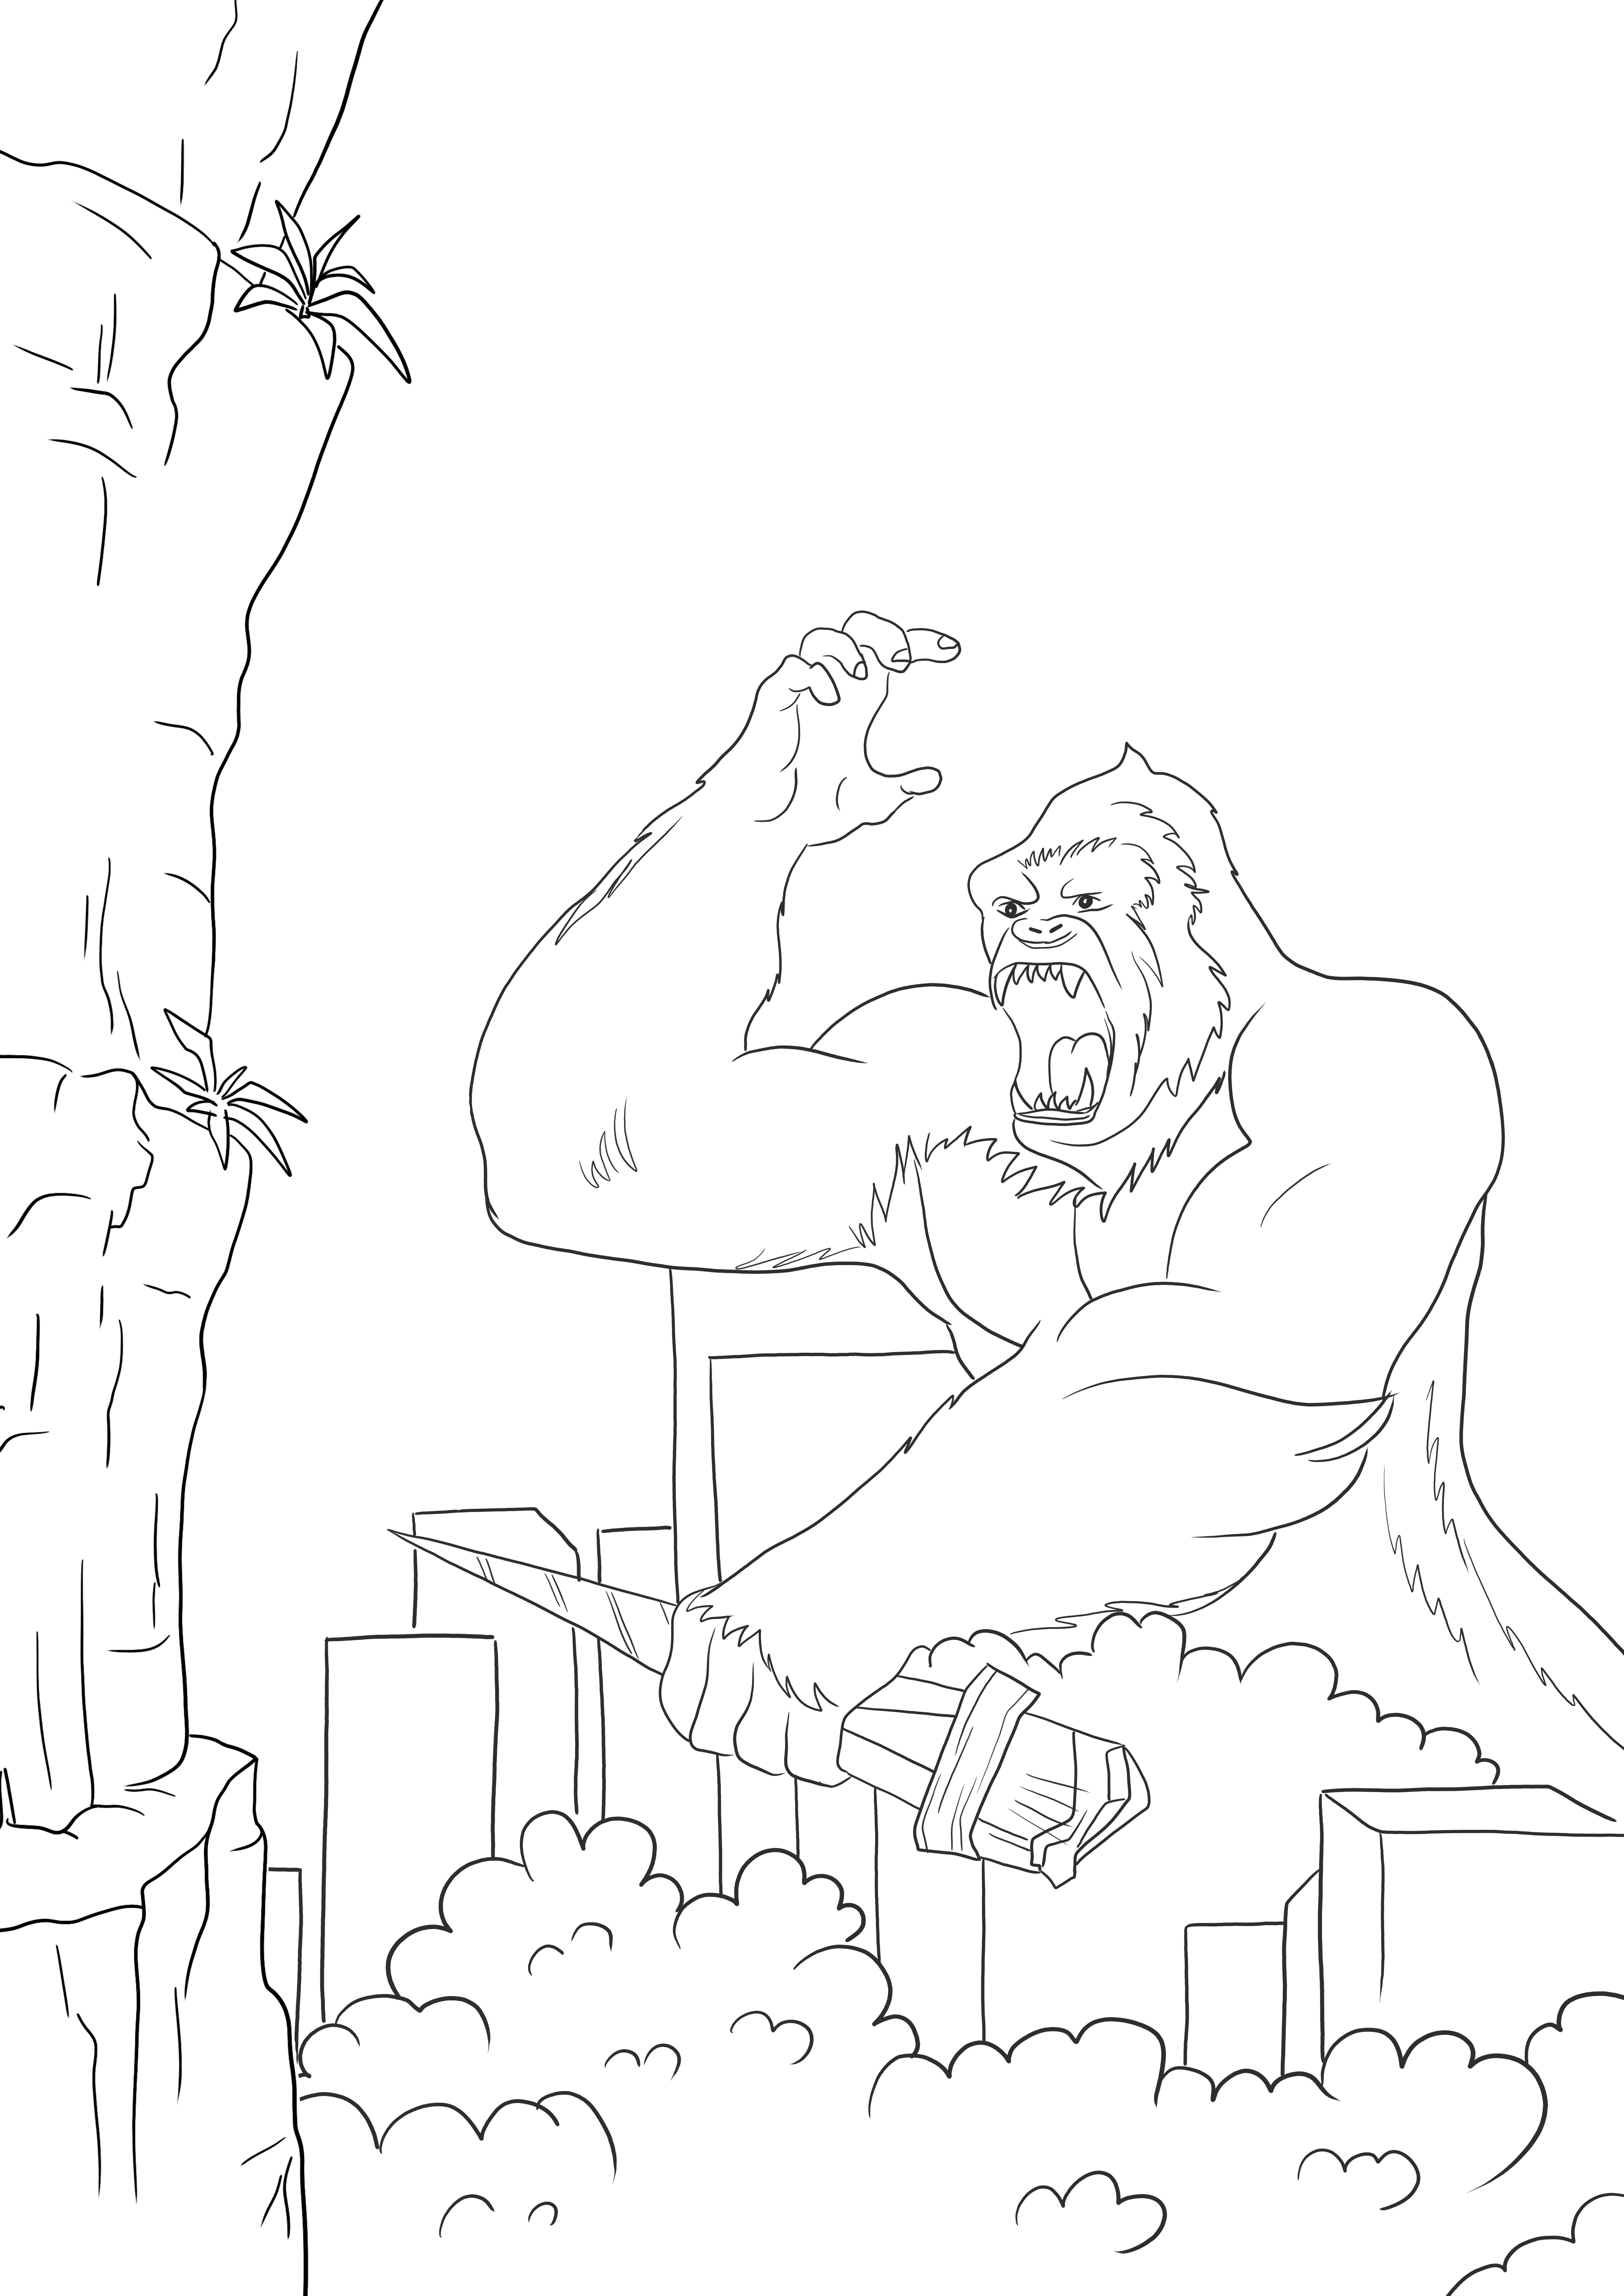 King Kong vs Godzilla kostenlose Färbung zum Ausdrucken oder Herunterladen